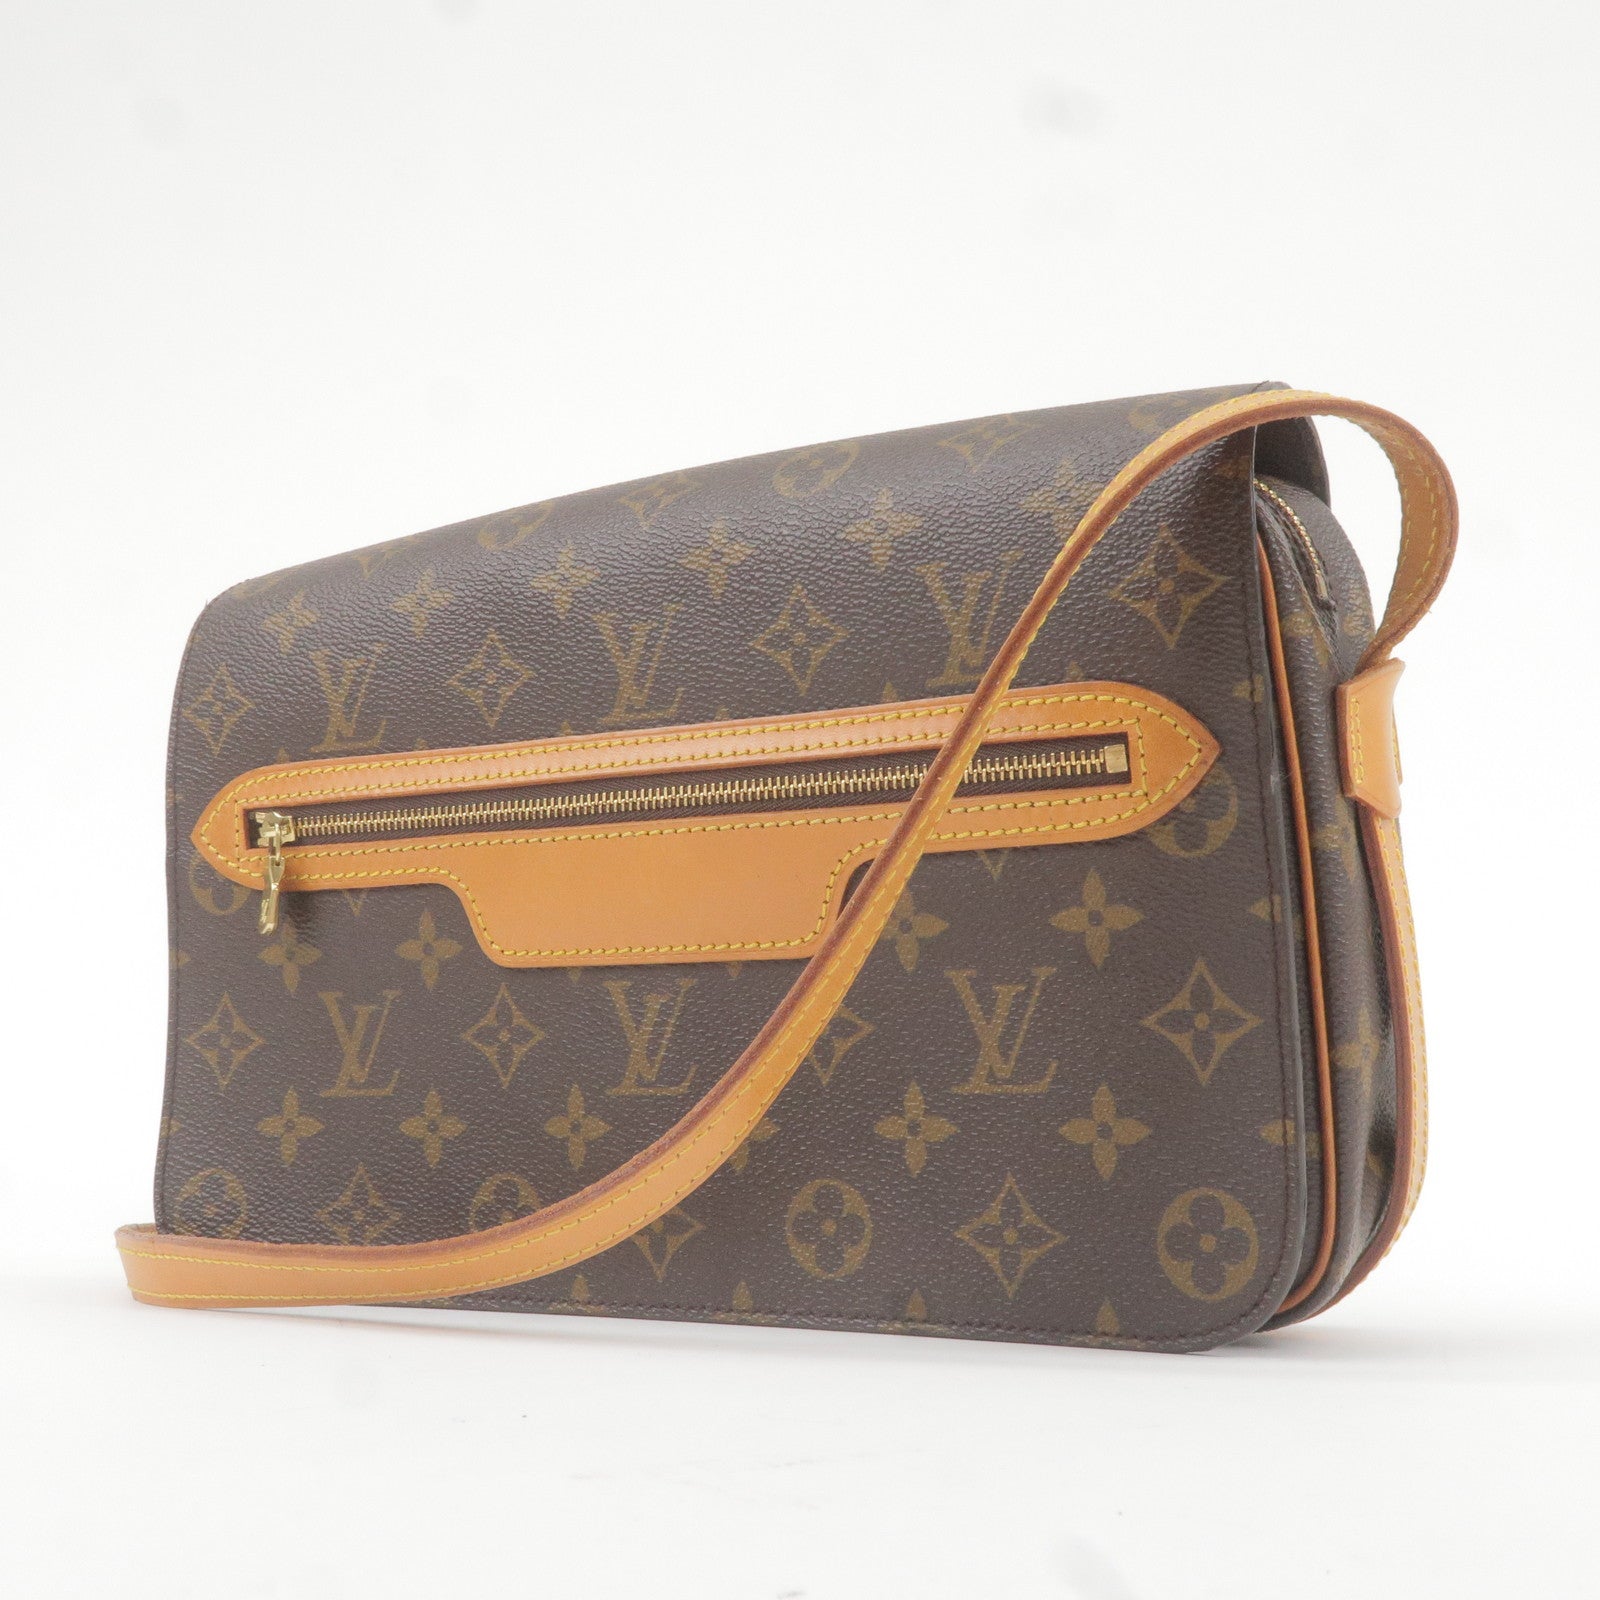 Louis Vuitton Saint Germain 28 Monogram Canvas Shoulder Bag on SALE